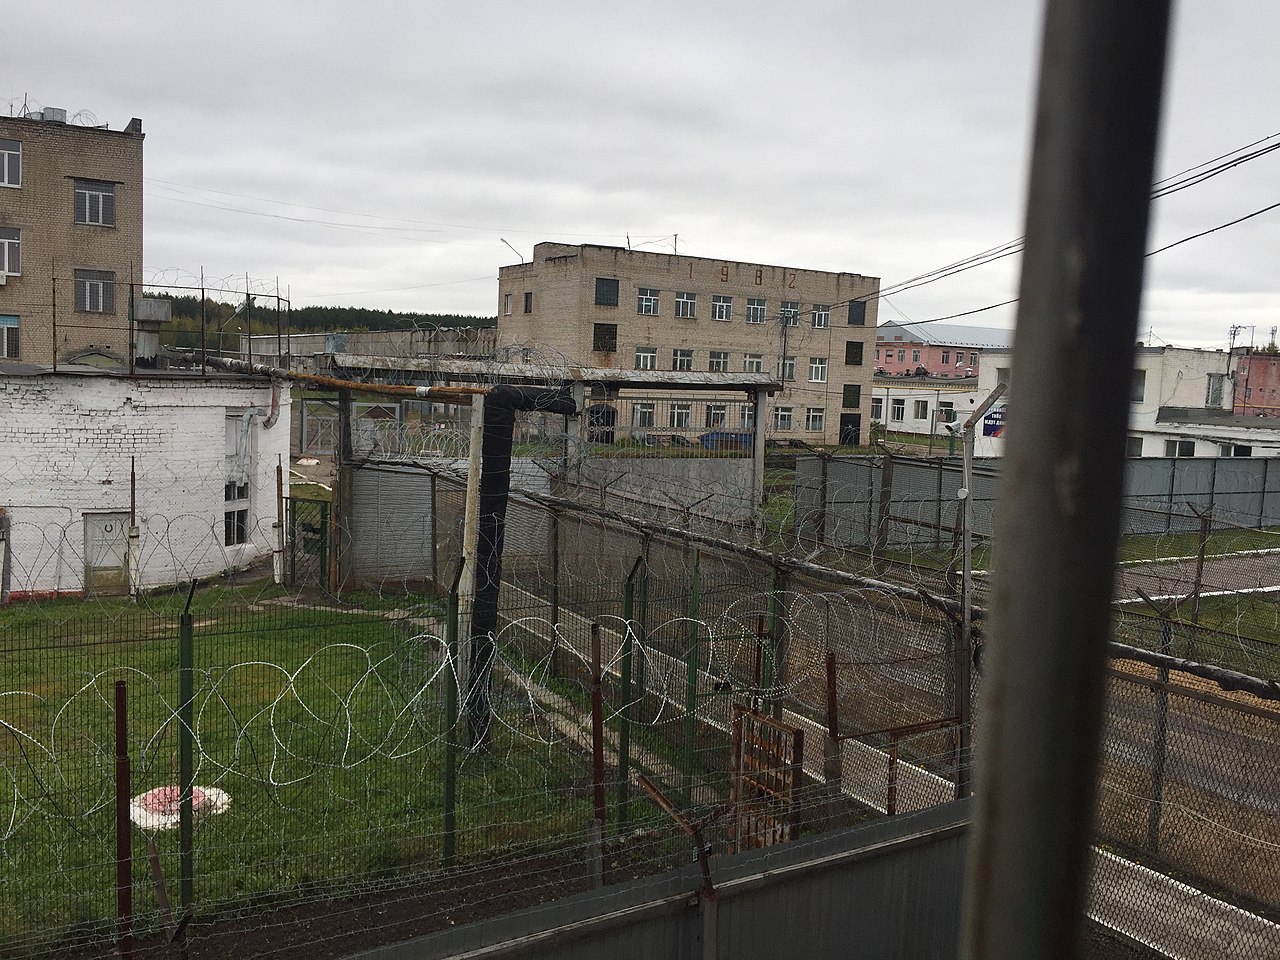 Vista della colonia correzionale di massima sicurezza FCU IK-5 nella città di Kokhma. (immagine di anteprima per l'articolo "Le prigioni segrete dove la Russia nasconde e tortura i civili ucraini"